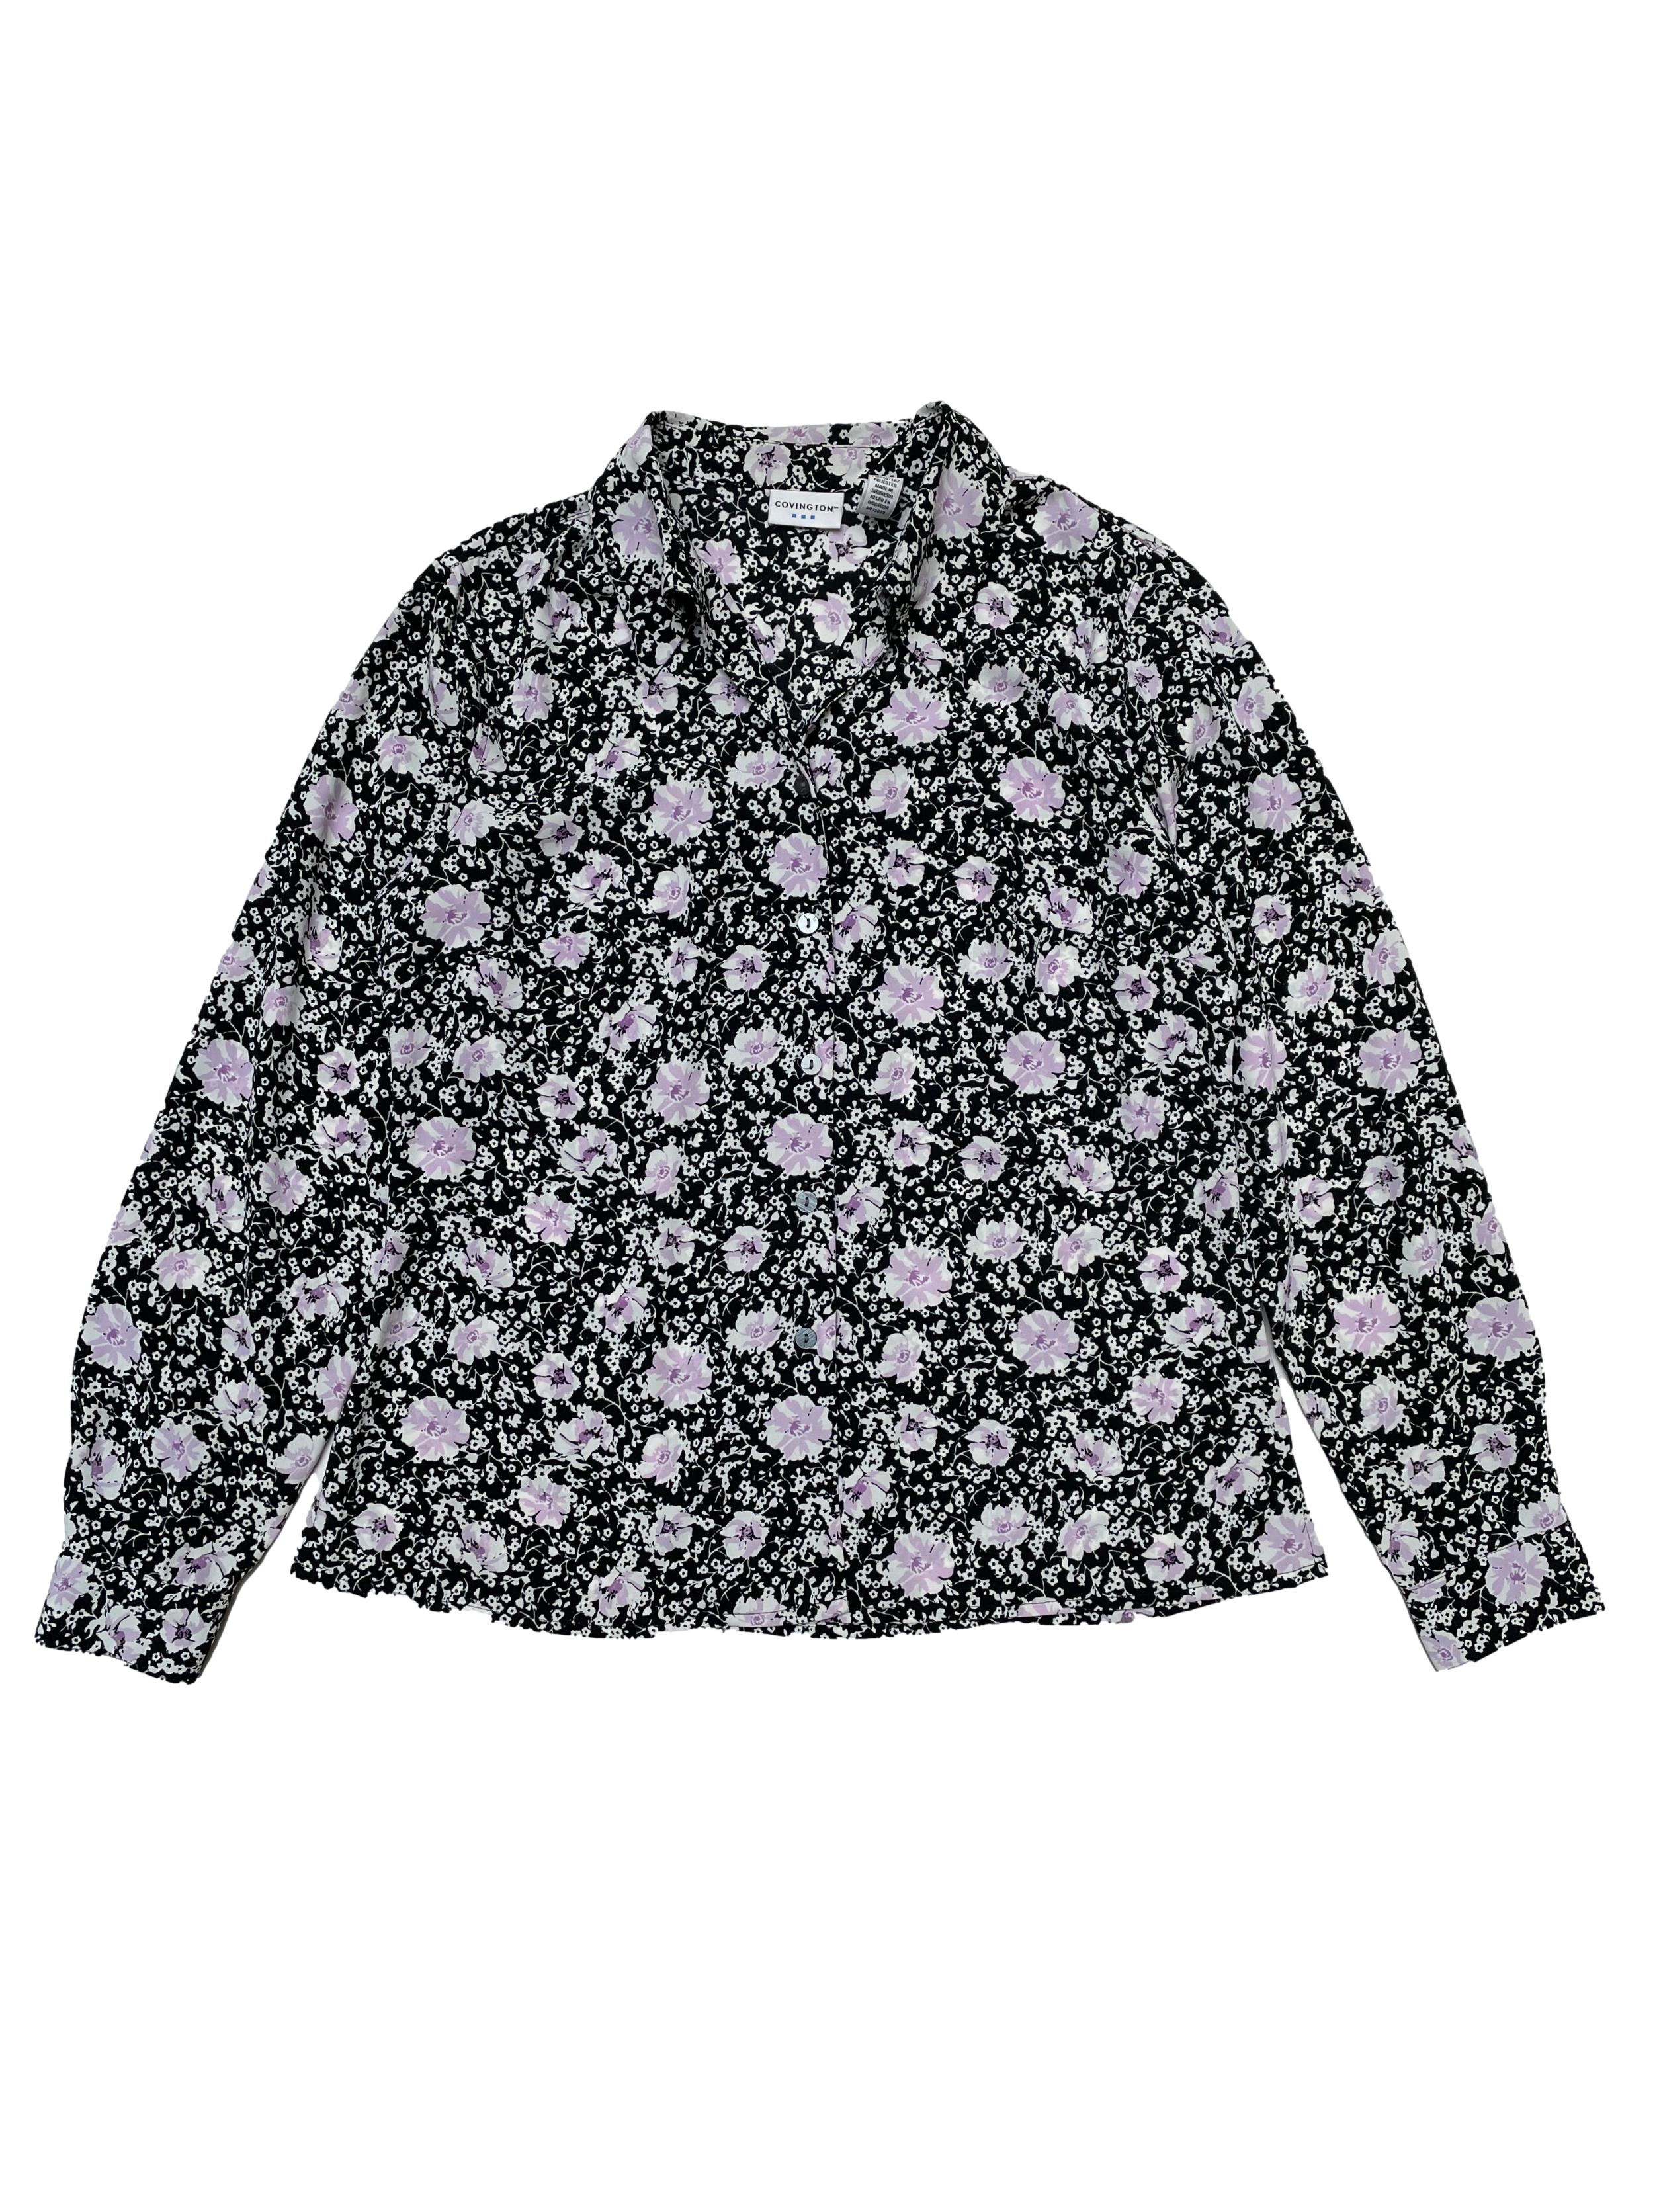 Blusa Covington de tela plana fluída negra con estampado de flores, cuello camisero y fila de botones. Busto 102cm Cintura 94cm Largo 60cm 